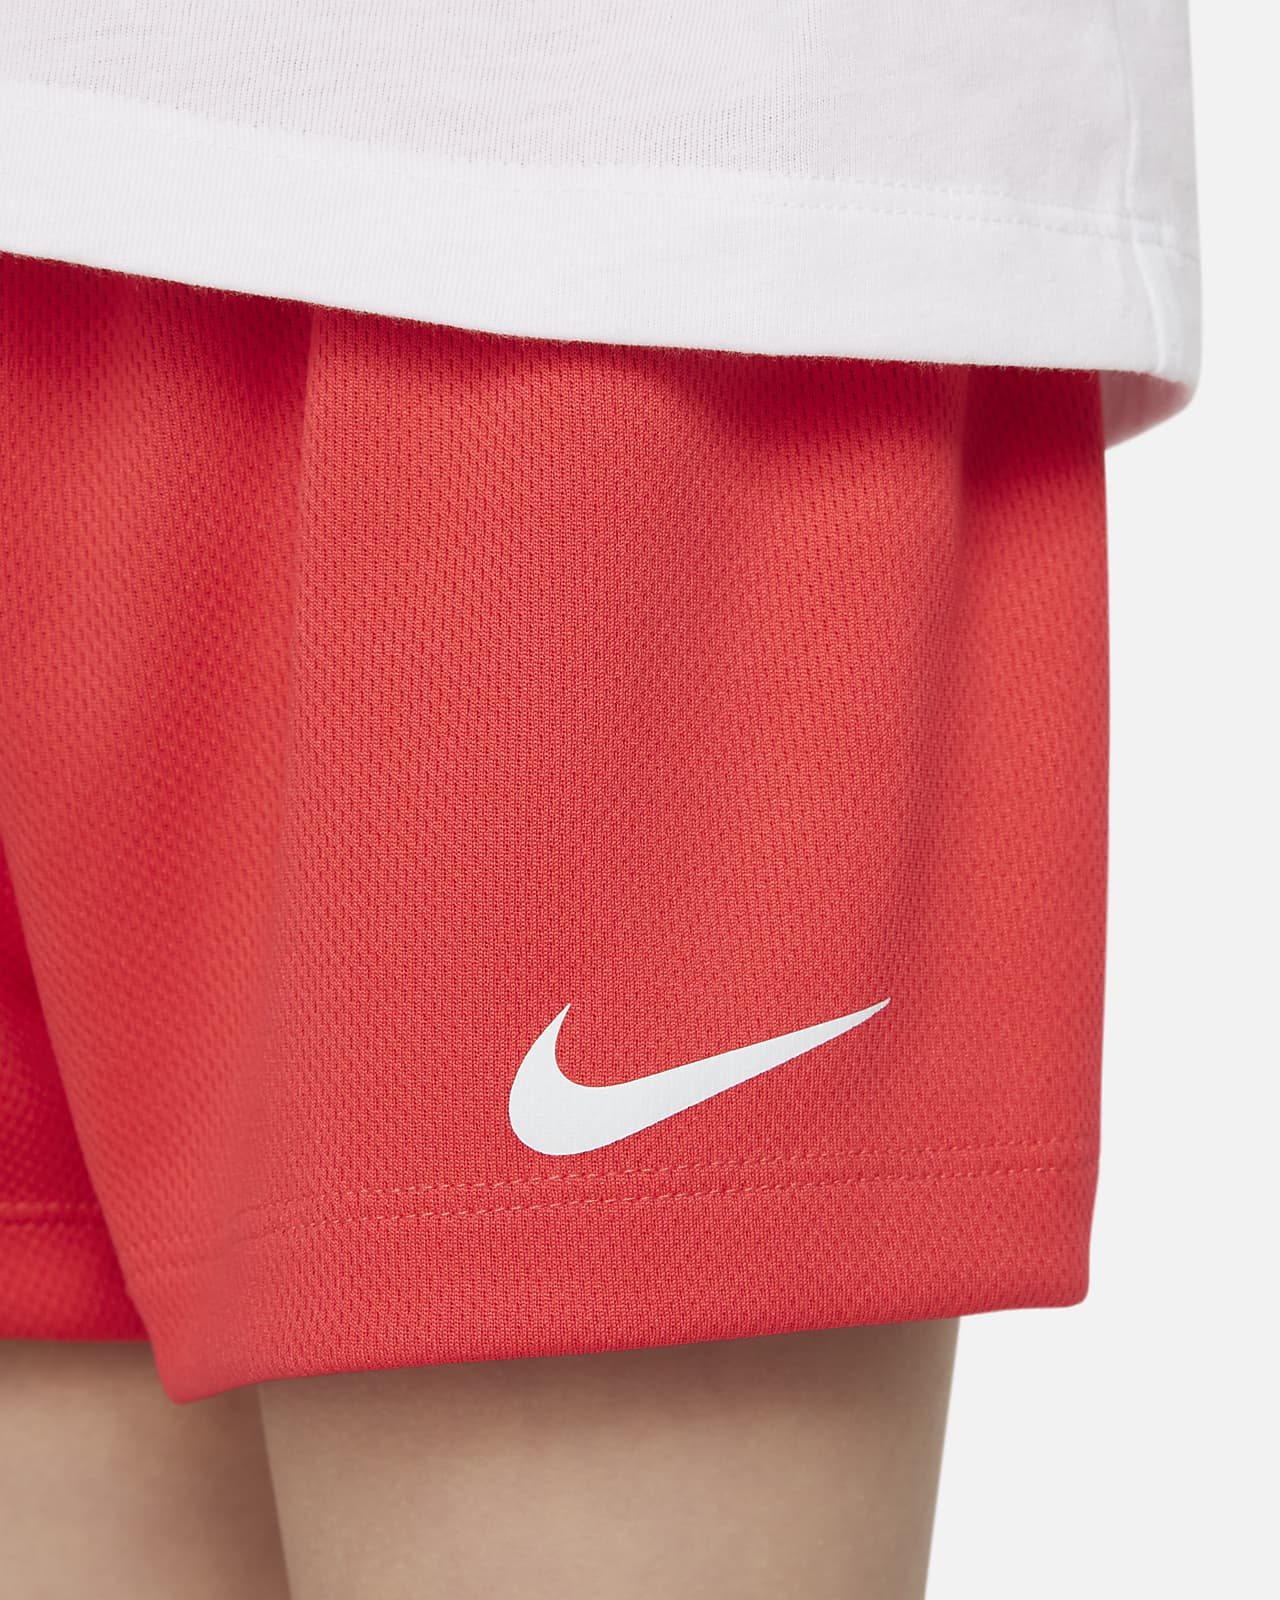 Nike Toddler T-Shirt and Shorts Set. Nike LU